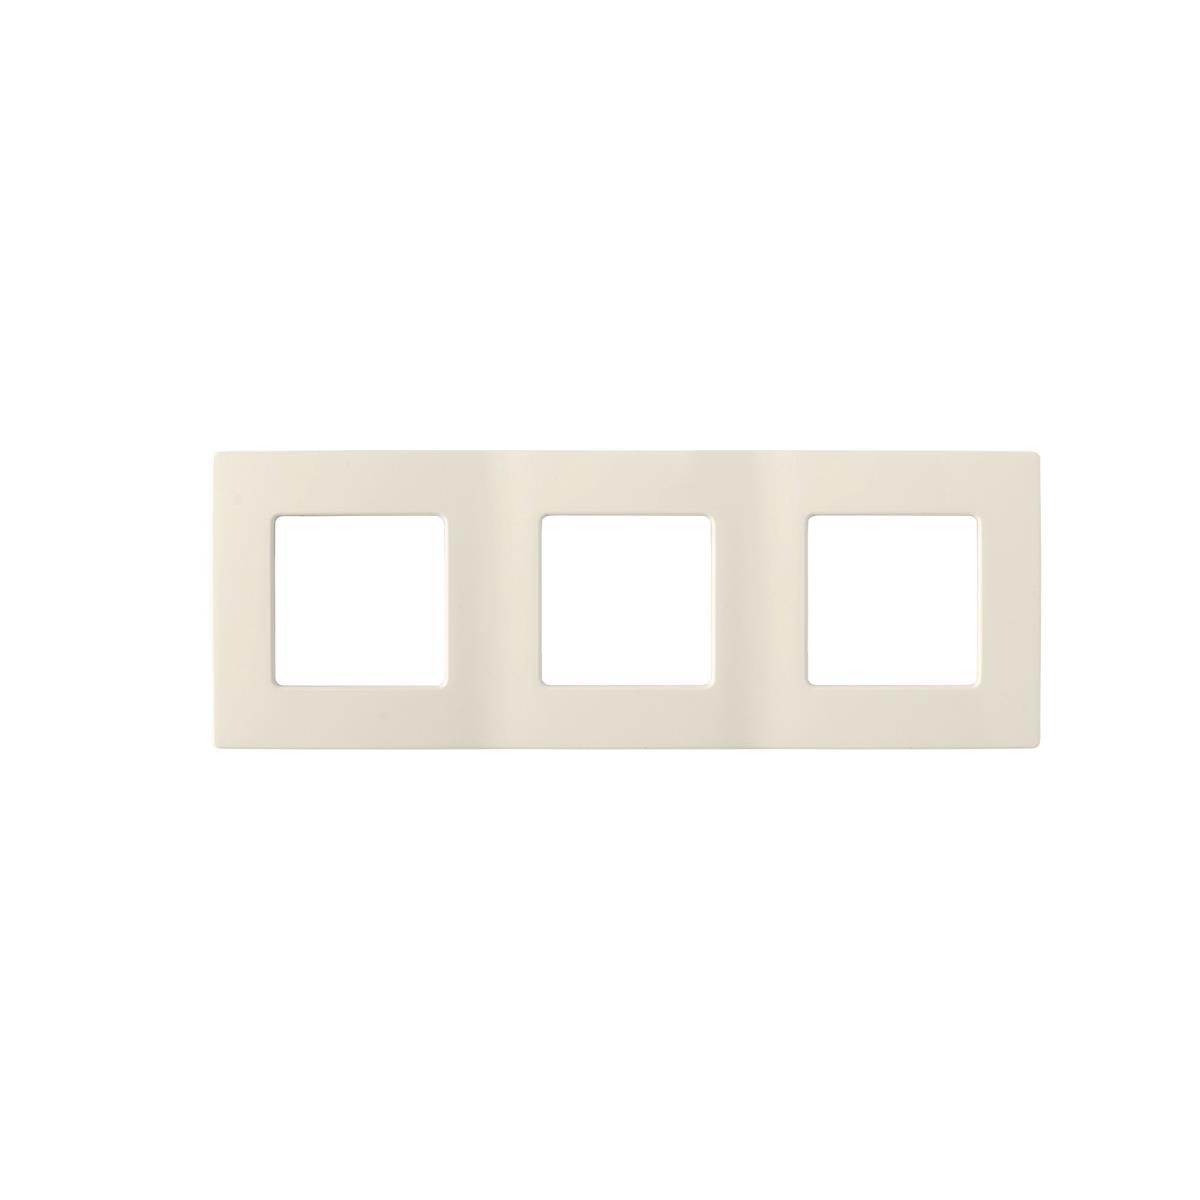 3-fach Rahmen für Steckdose Schalter Lichtschalter Dreifach creme Serie RITA,Okko,735212.373-C, 4810158094198